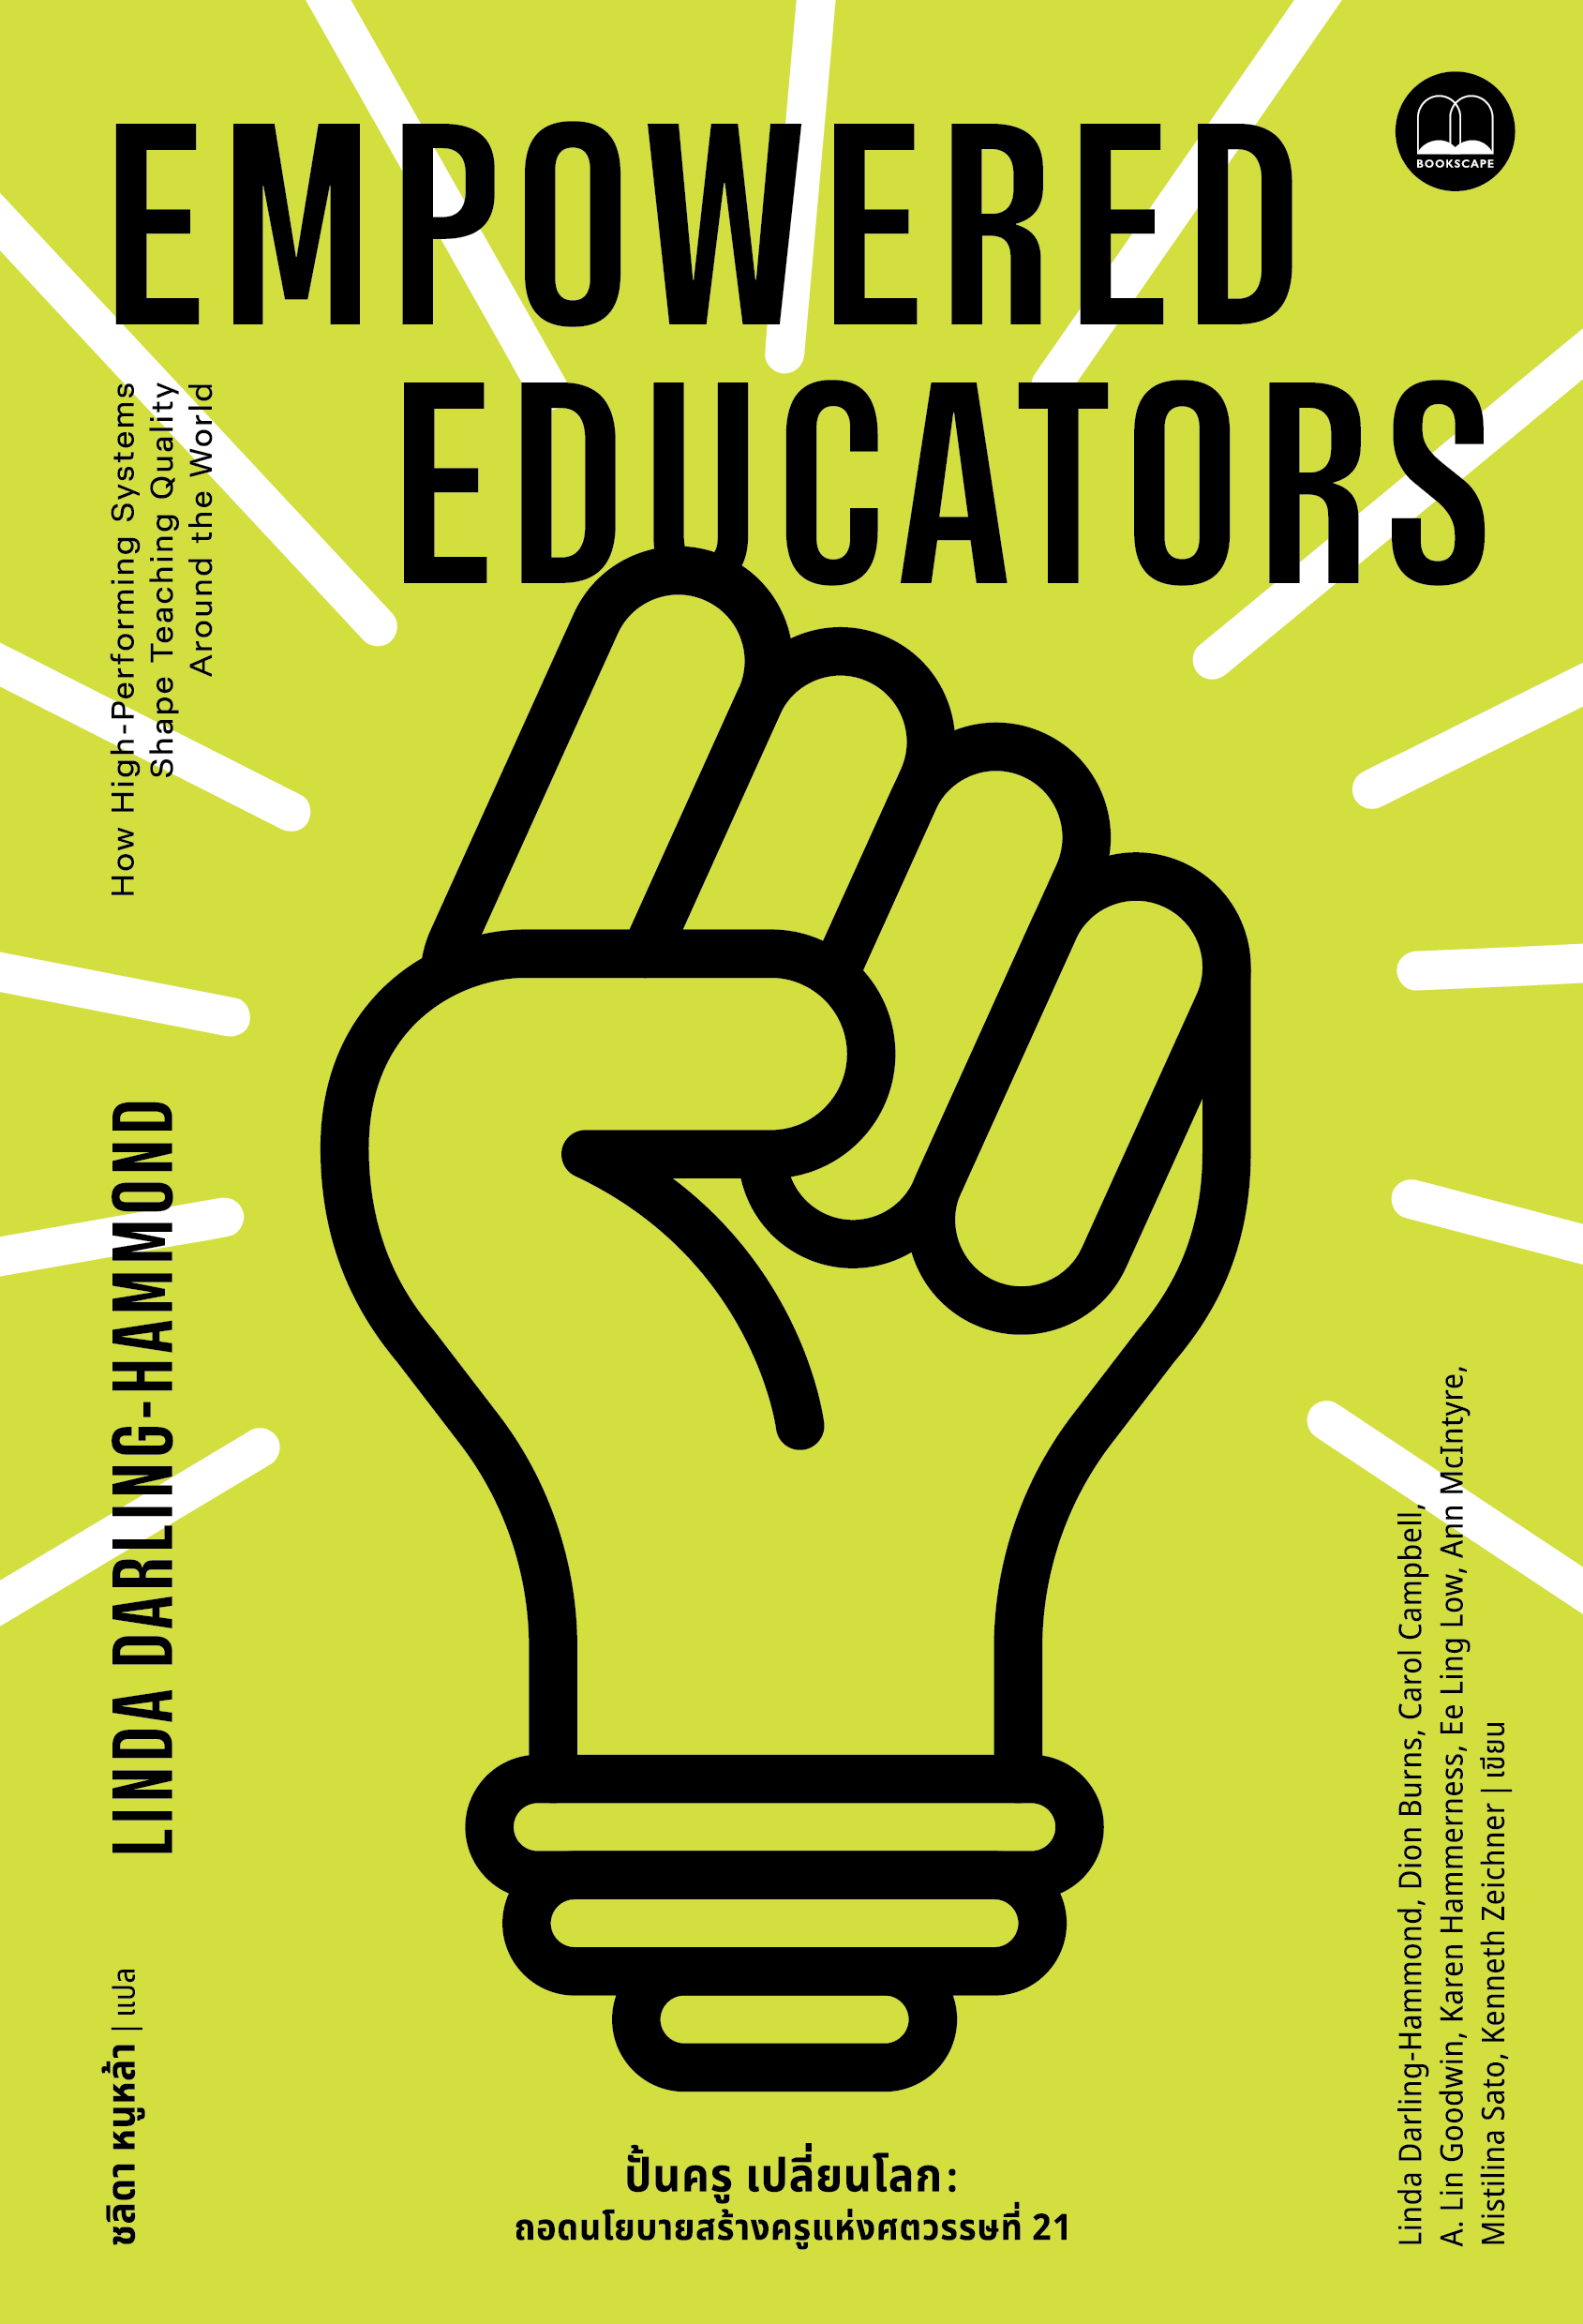 ปั้นครู เปลี่ยนโลก Empowered Educators : ถอดนโยบายสร้างครูแห่งศตวรรษที่ 21 / Linda Darling-Hammond / ชลิดา หนูหล้า / Bookscape